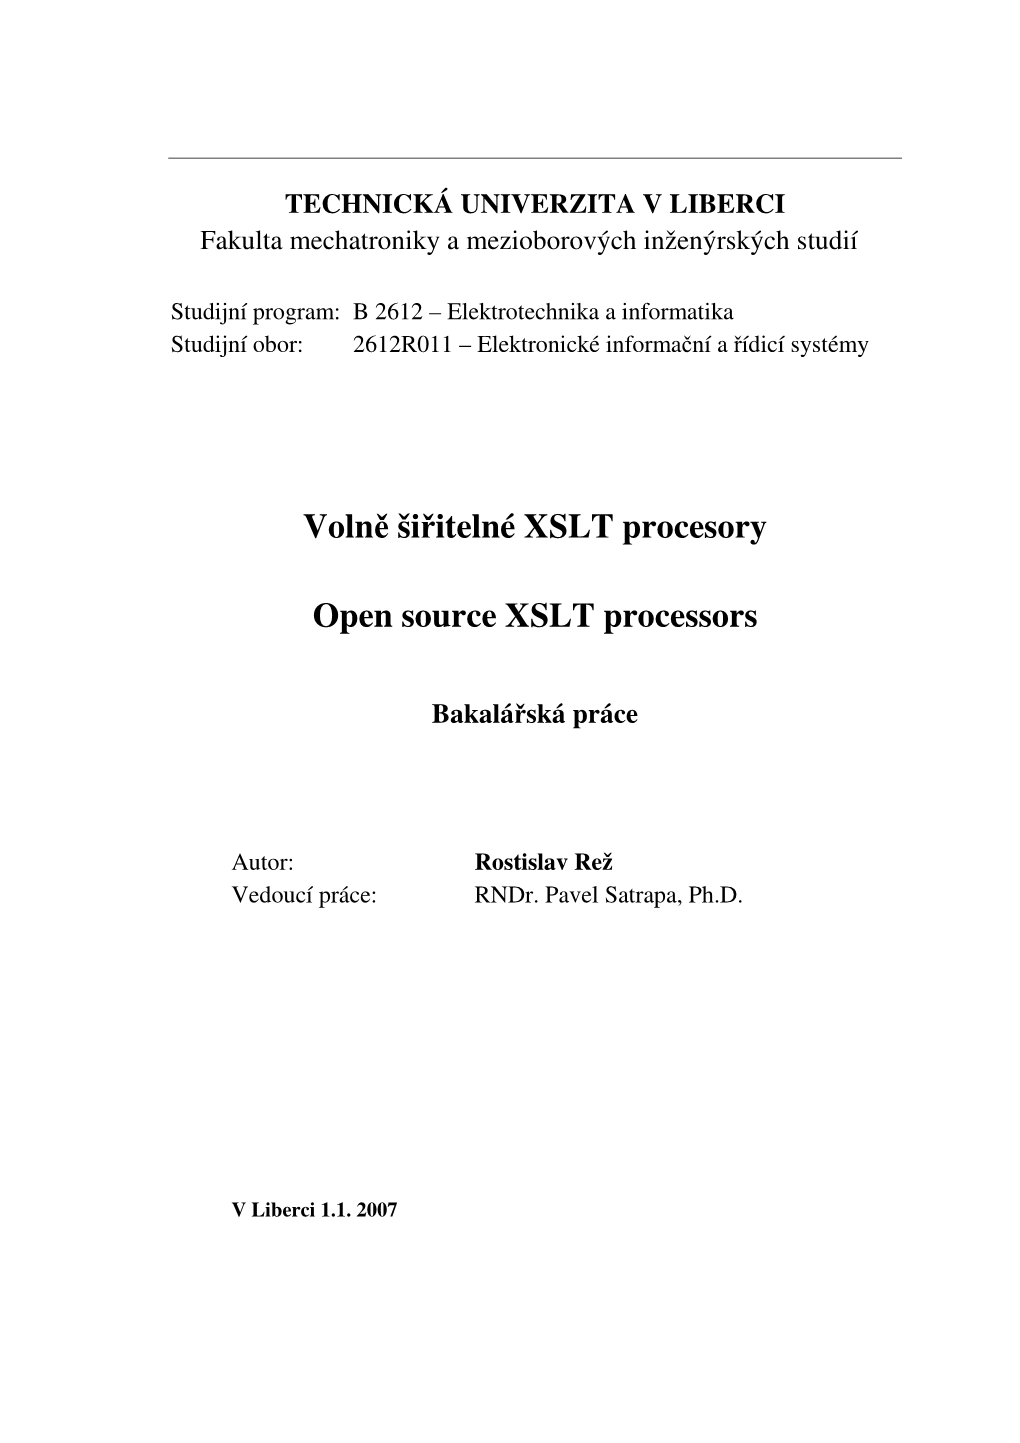 Volně Šiřitelné XSLT Procesory Open Source XSLT Processors